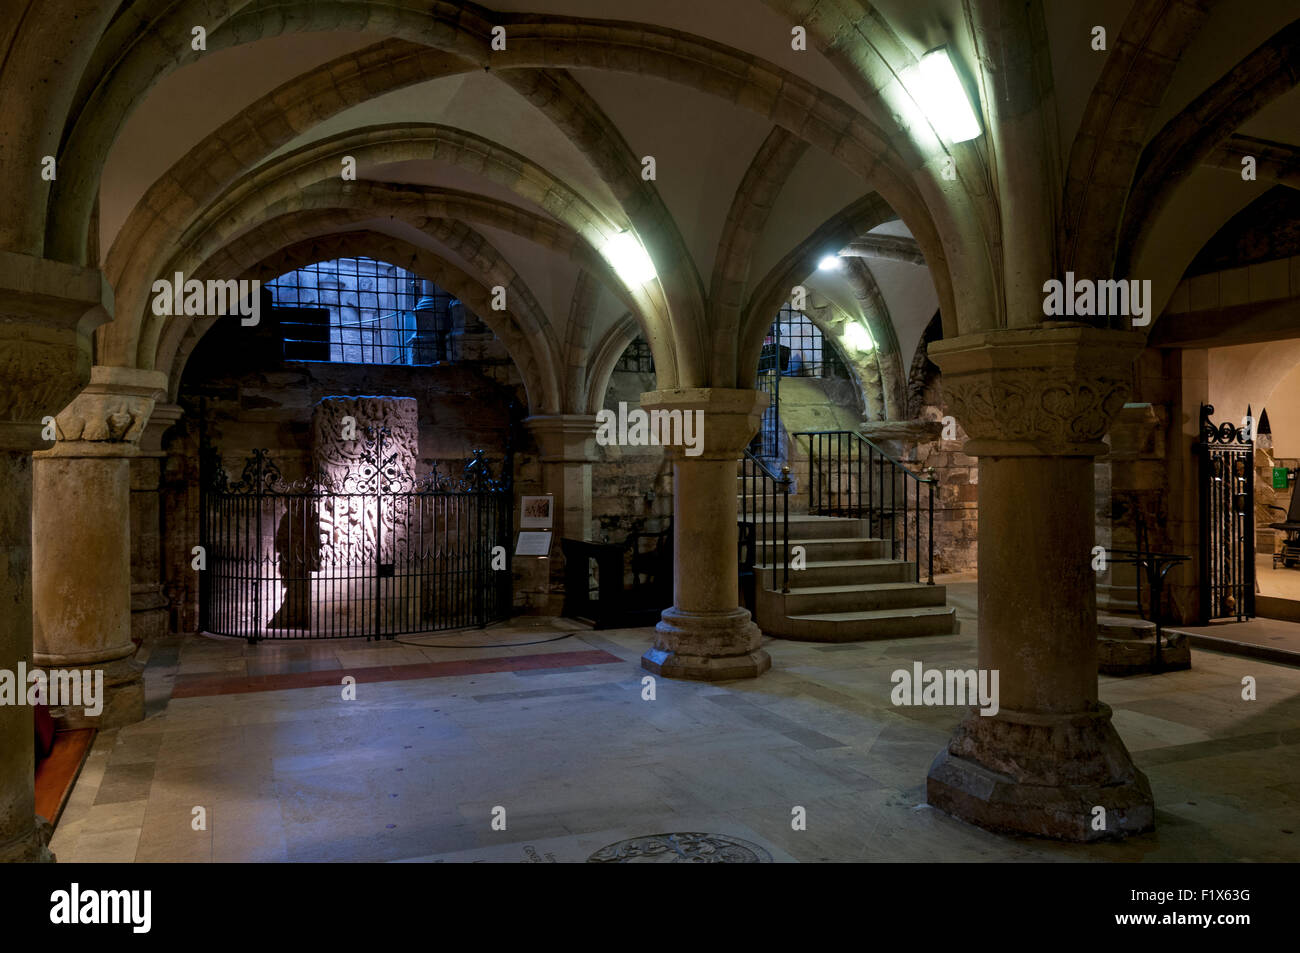 La crypte de la cathédrale de York, ville de York, Yorkshire, Angleterre, Royaume-Uni. Banque D'Images